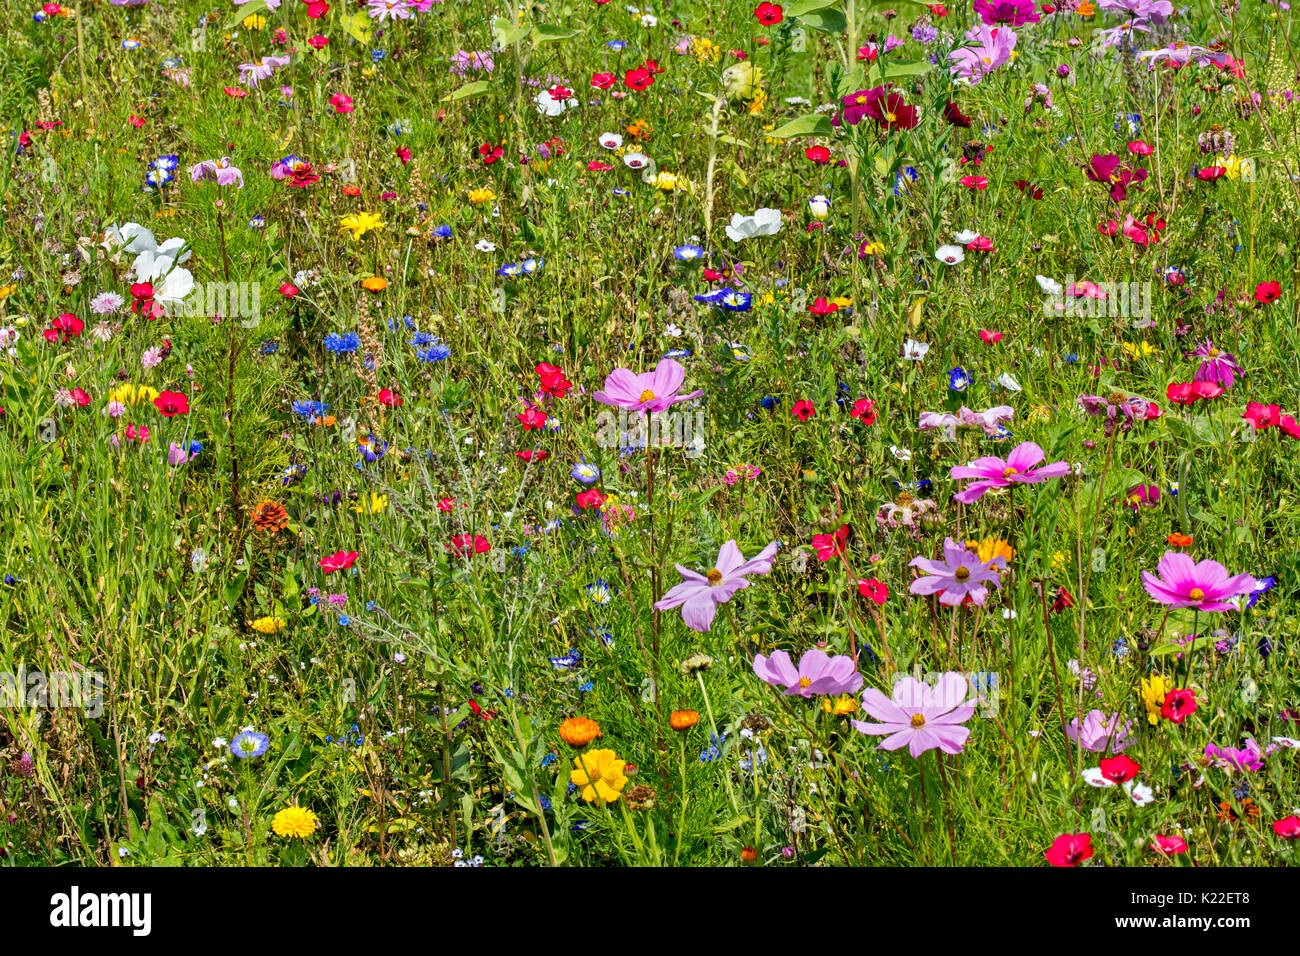 Mischung aus bunten Wildblumen in wildflower Zone angrenzenden Wiese, vor allem gepflanzt zu gewinnen und helfen Bienen, Schmetterlinge und andere Bestäuber Stockfoto